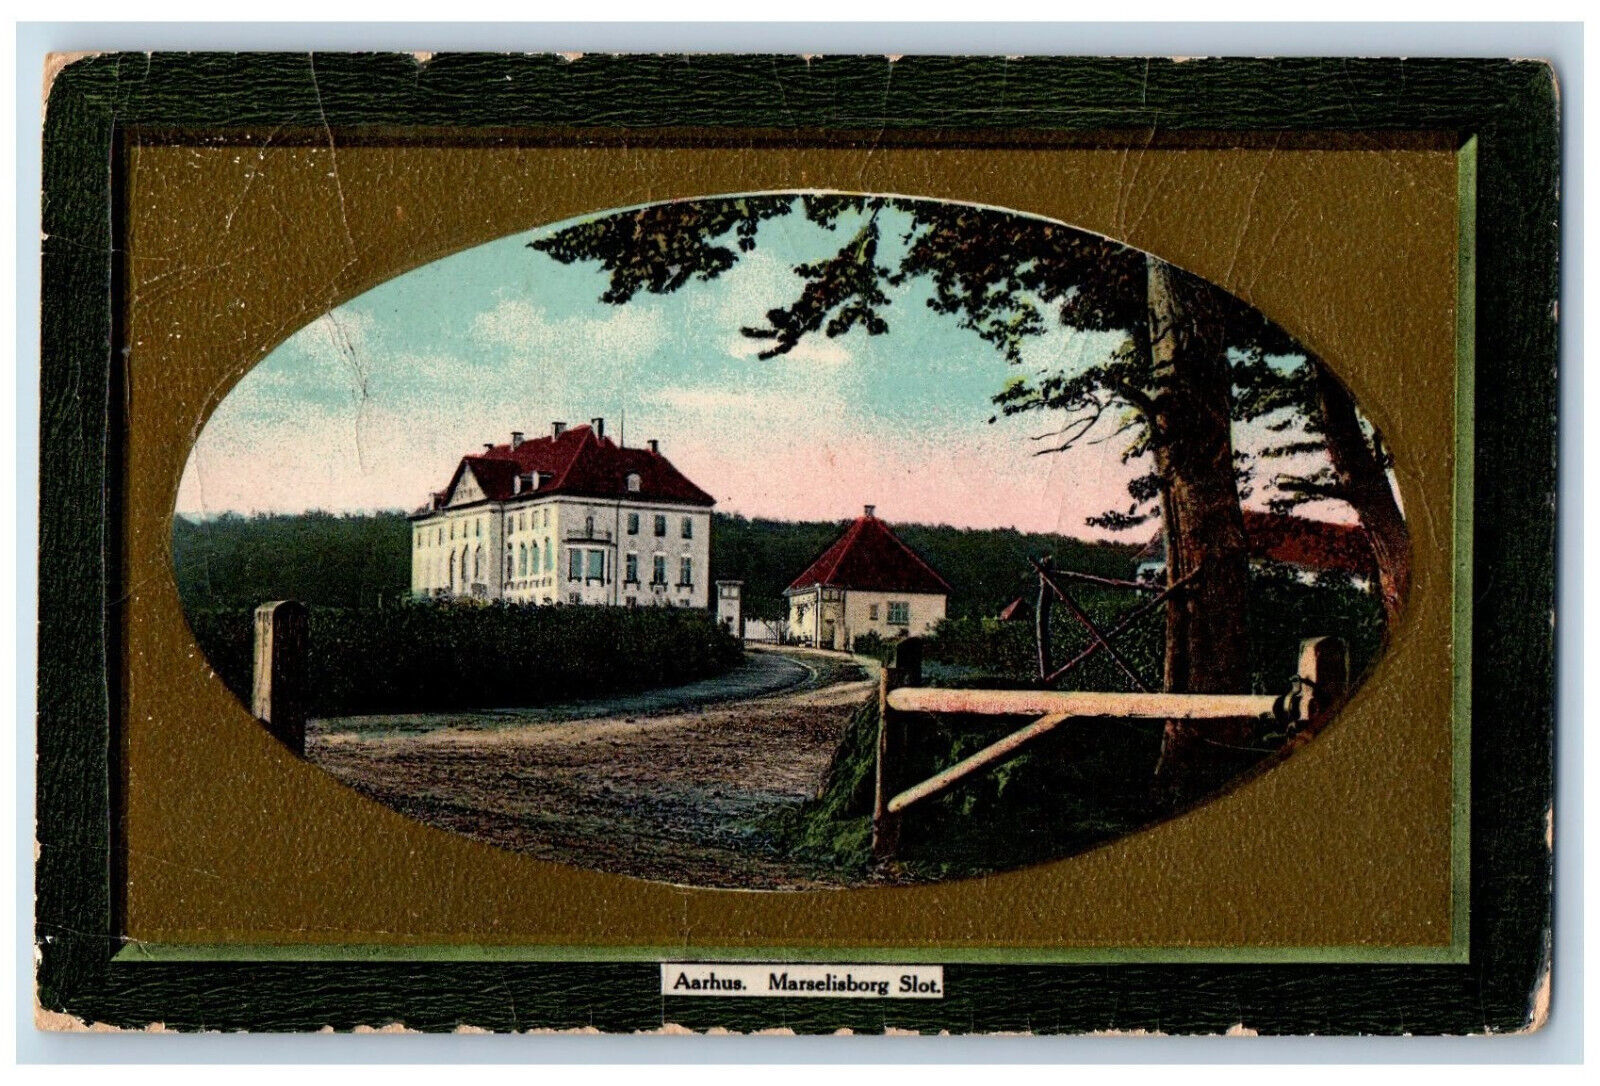 Aarhus Jutland Denmark Postcard Marselisborg Slot 1913 Posted Antique